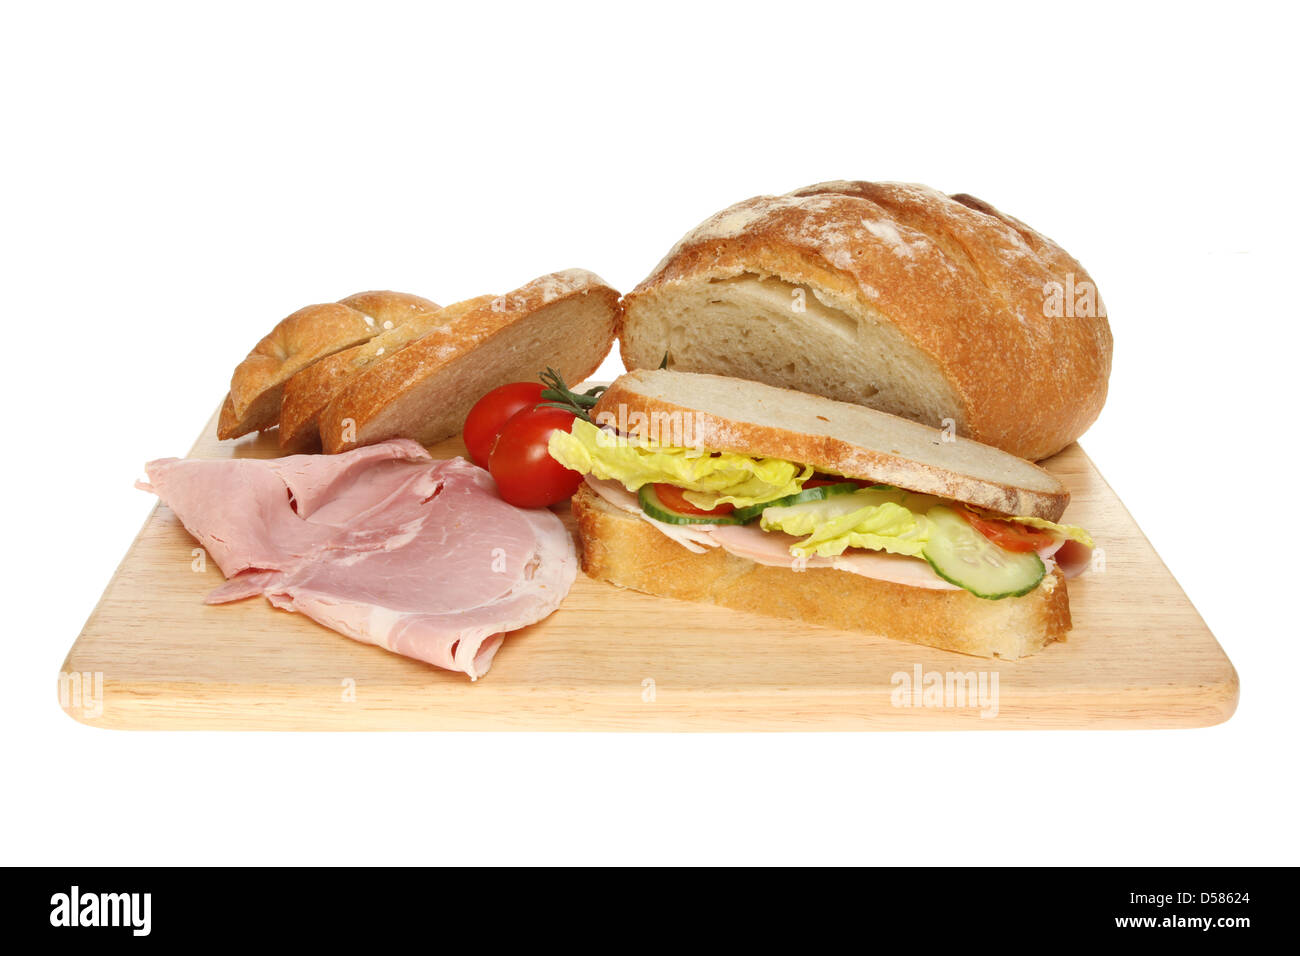 Et de sandwich au jambon pain Bloomer et les tomates sur une planche en bois isolés contre white Banque D'Images